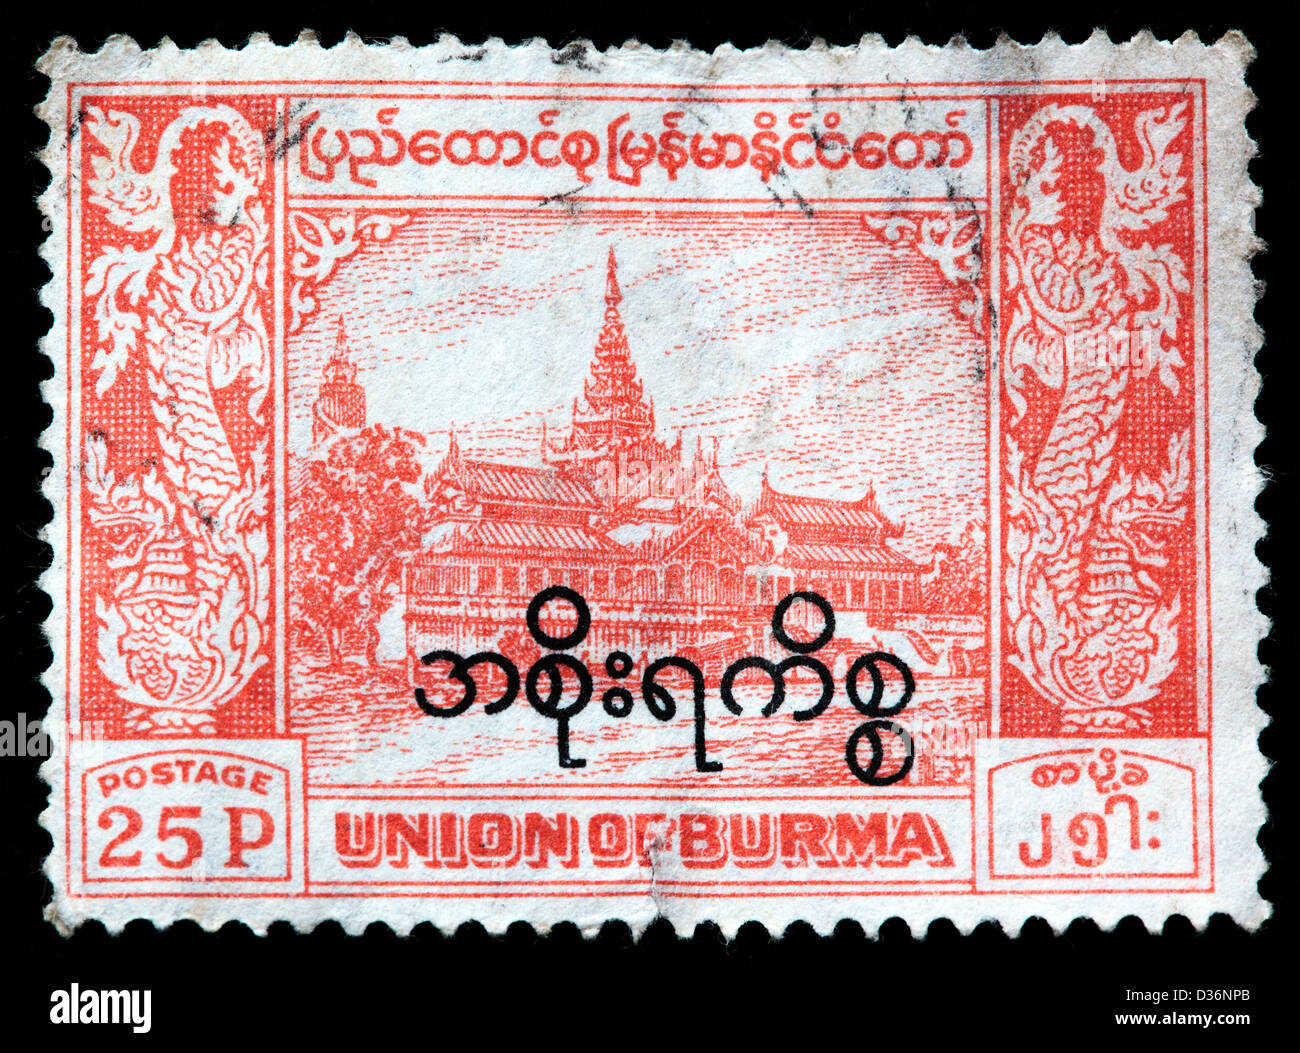 Centenaire du timbre-poste, Mandalay, Birmanie, 1959 Banque D'Images